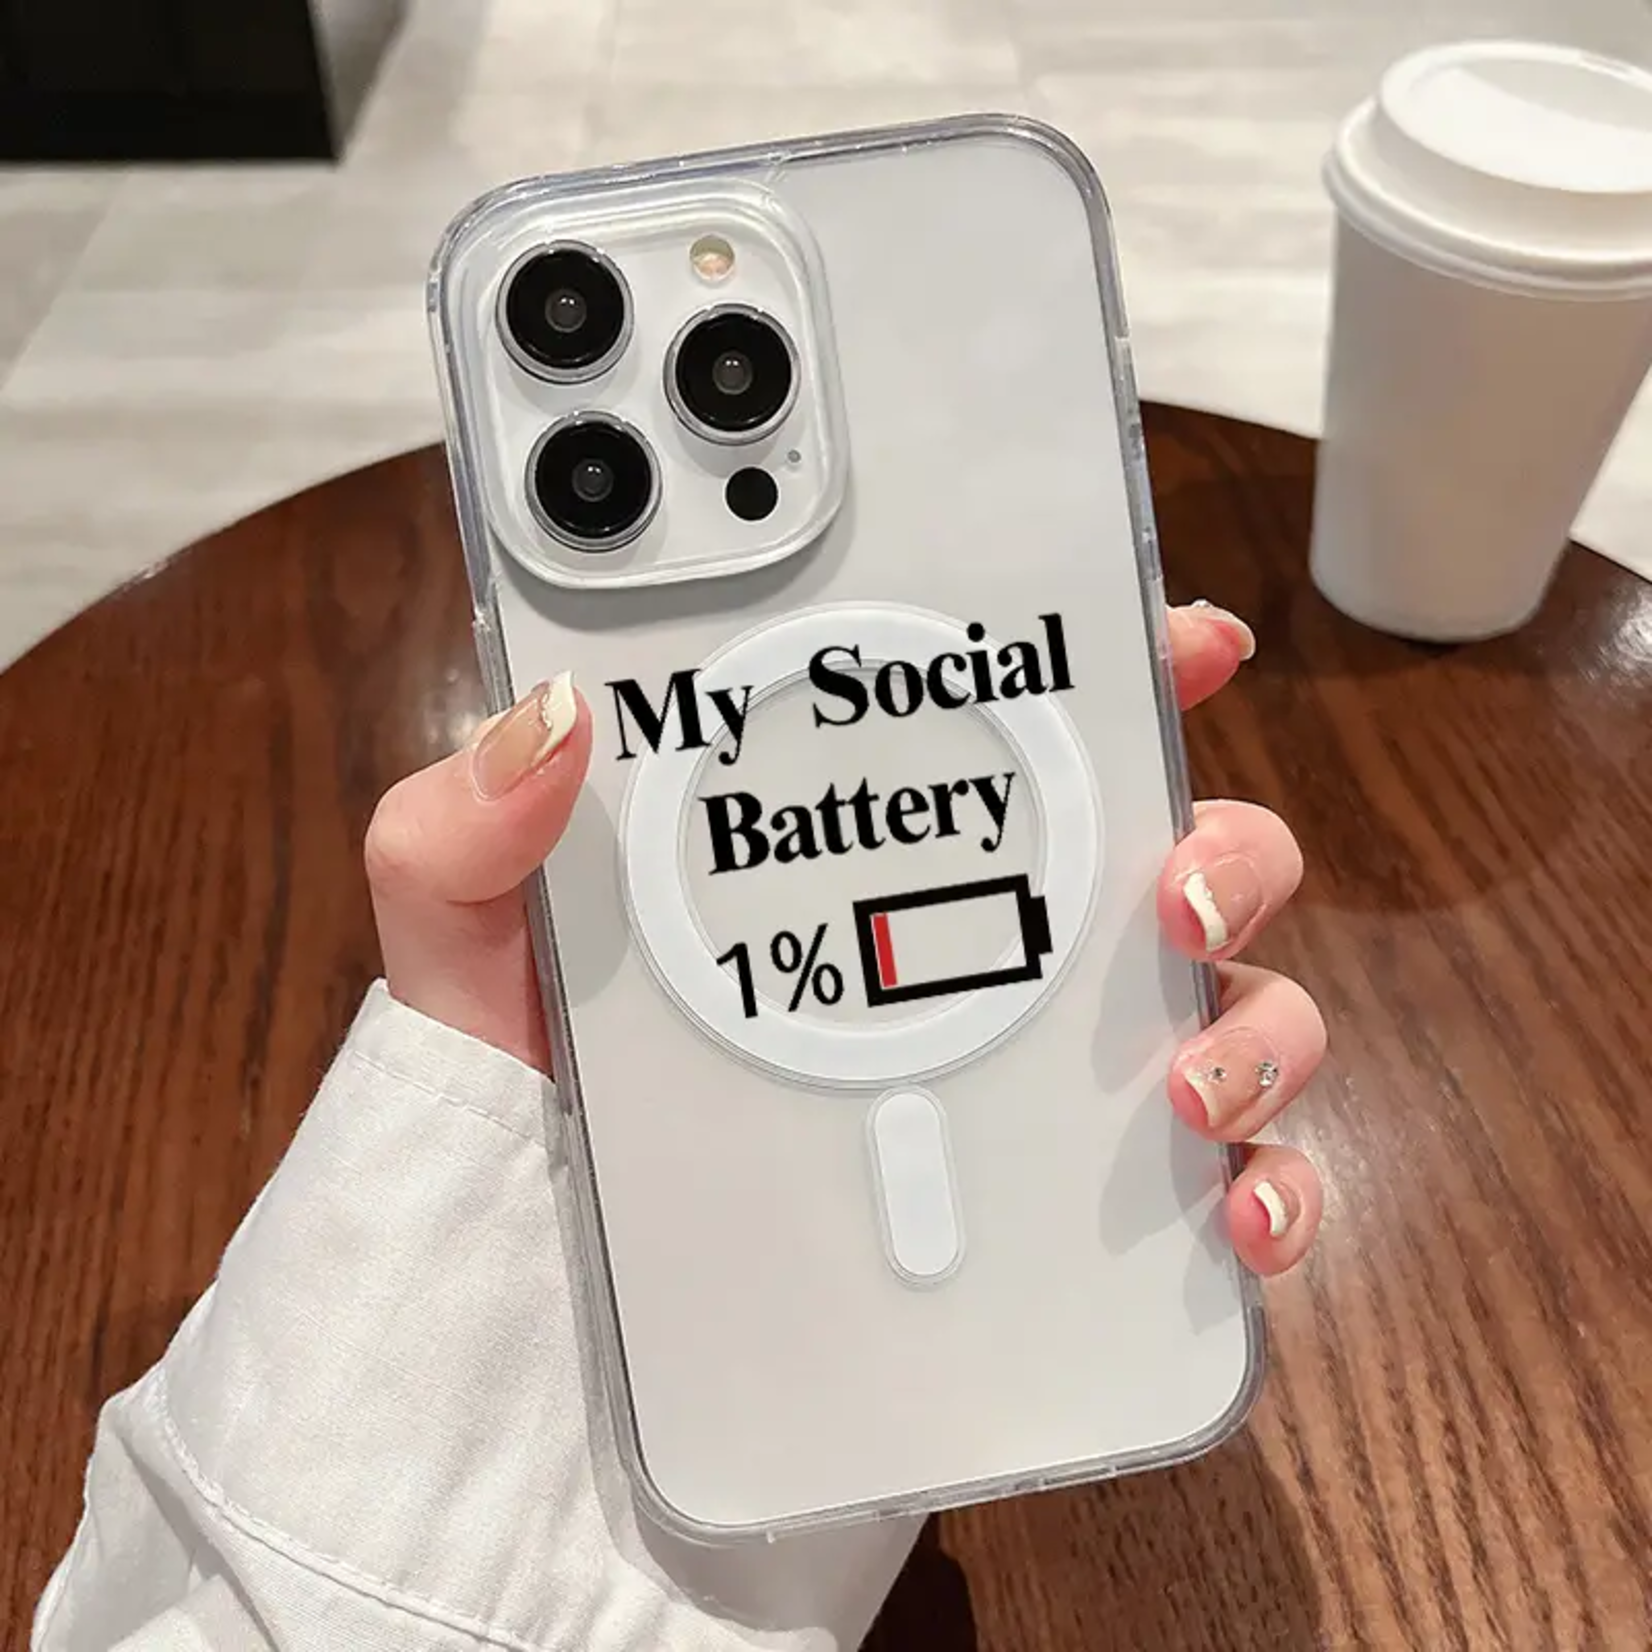 Apple Étui pour iPhone 13 - 1% social battery